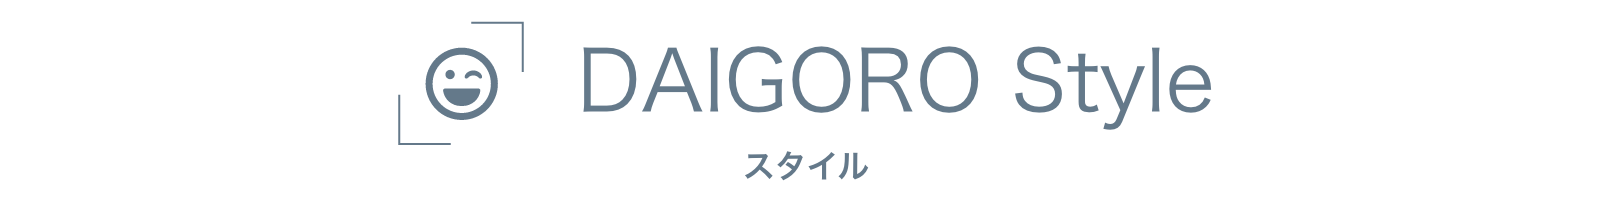 DAIGORO STYLE - スタイル